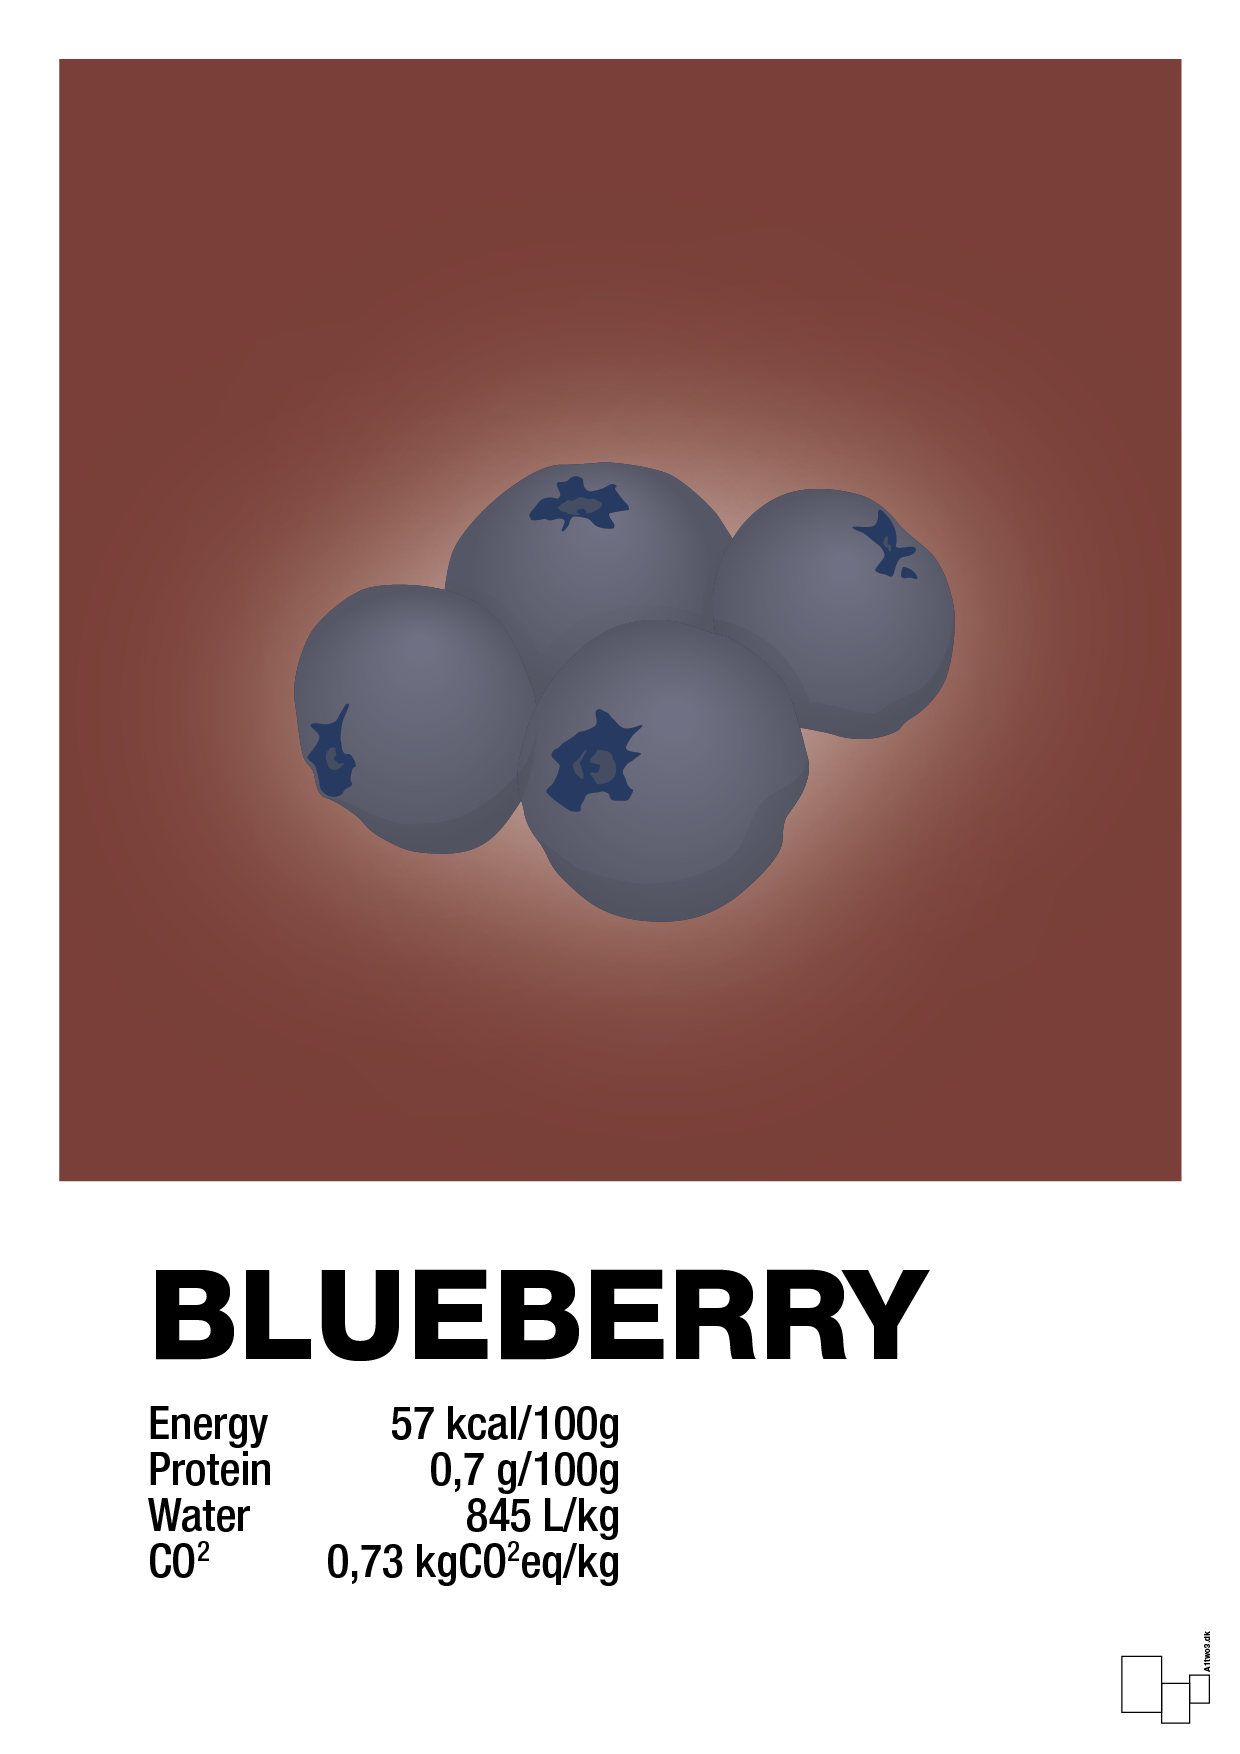 blueberry nutrition og miljø - Plakat med Mad & Drikke i Red Pepper